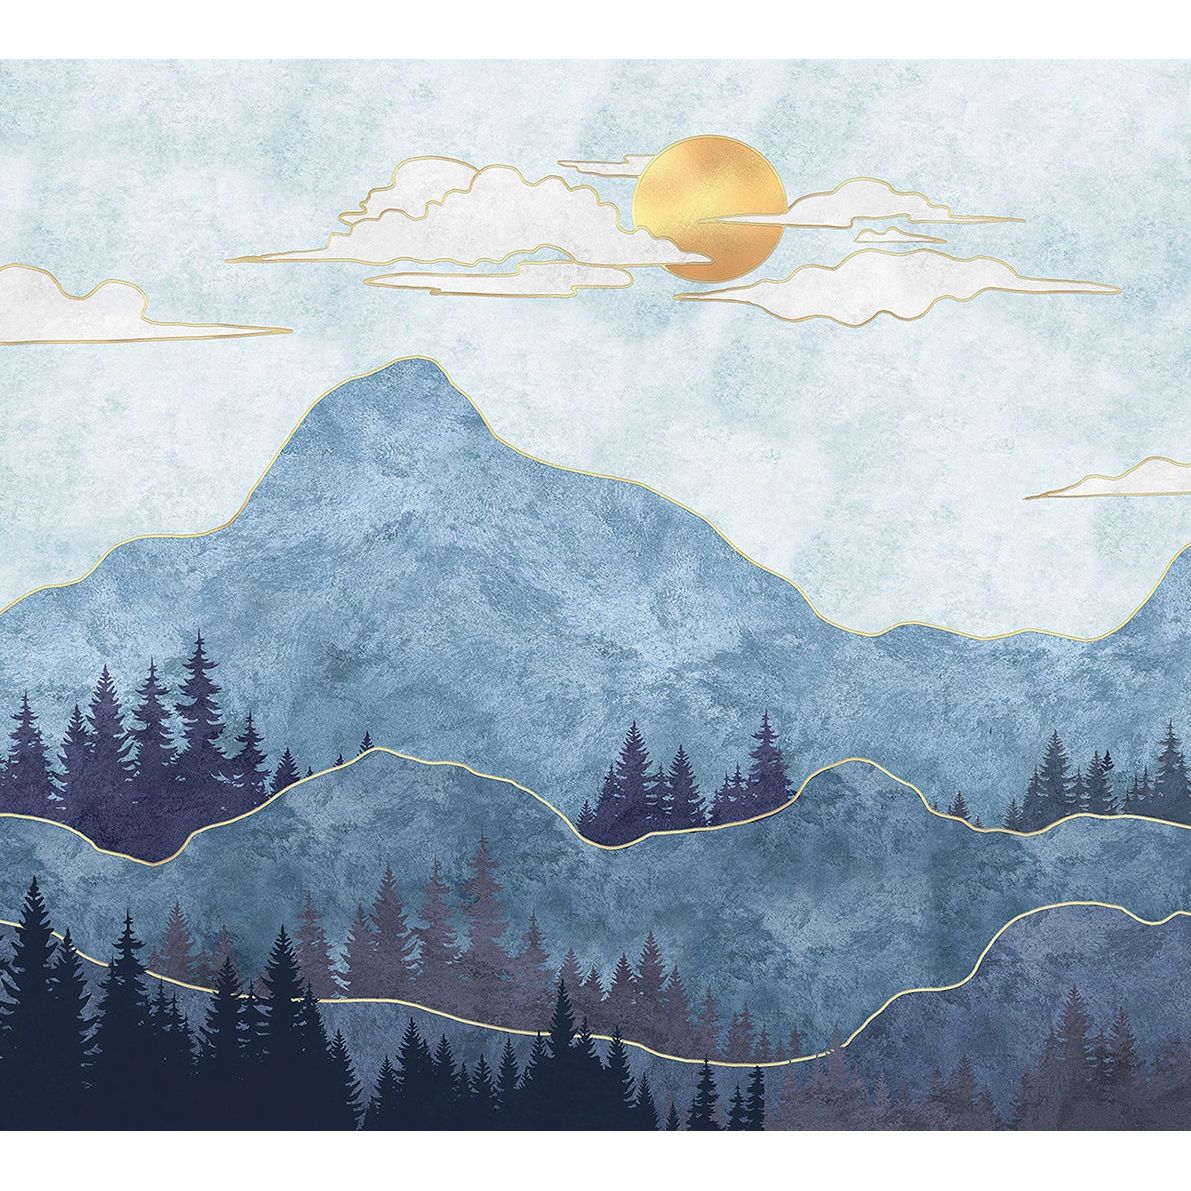 Skyward Summit: Mountain, Clouds, and Sun Wall Mural